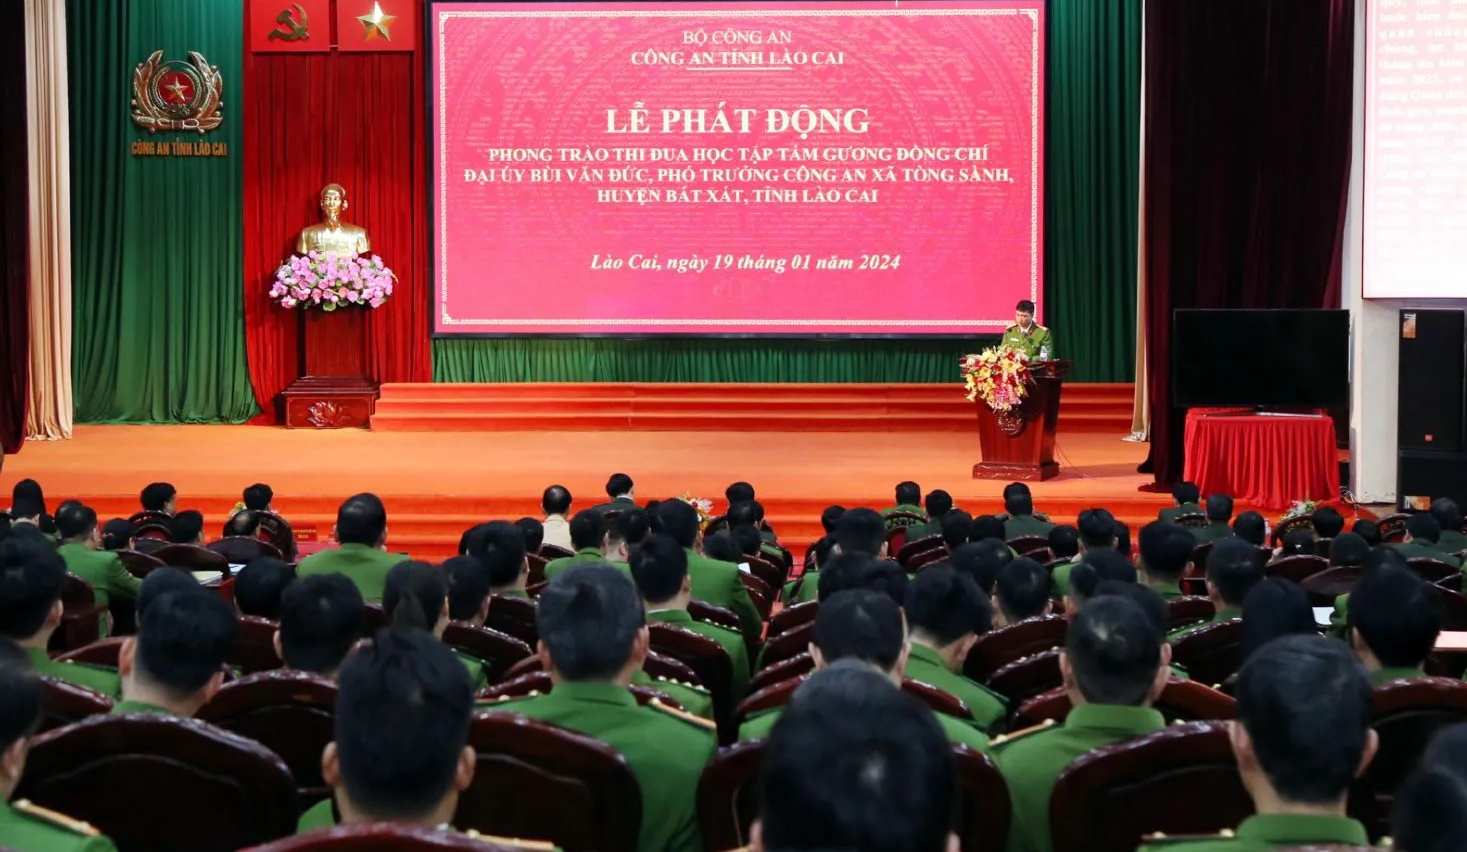 Phát động phong trào thi đua học tập tấm gương Phó trưởng Công an xã vừa hy sinh ở Lào Cai- Ảnh 1.